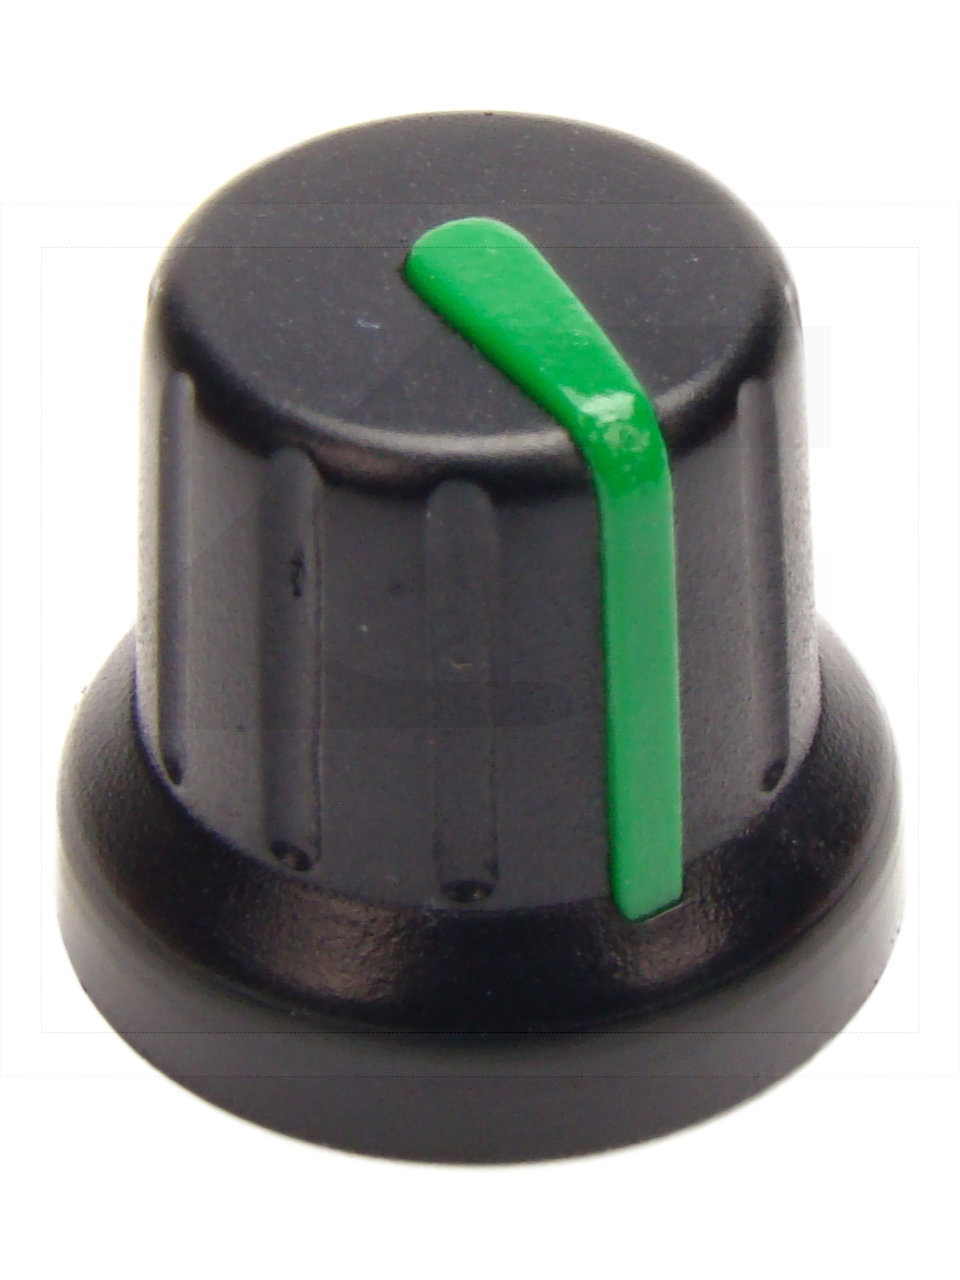 Pokrętło N-4 znacznik zielony; średnica osi 6mm;fi 16x14mm;